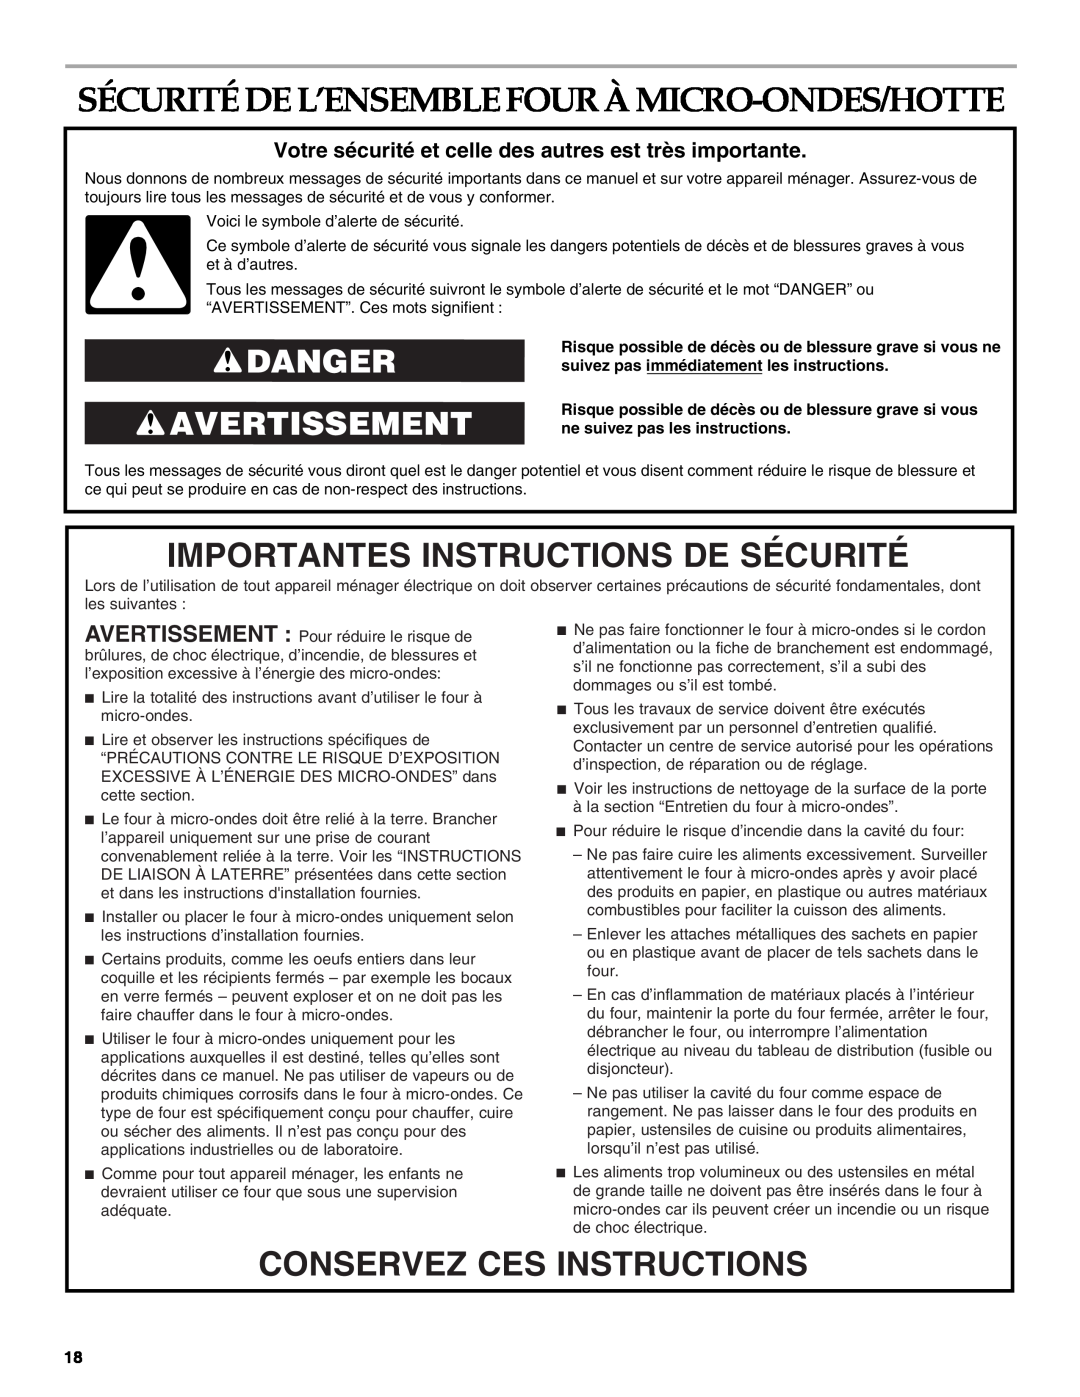 Whirlpool YKHMS1850S manual Importantes Instructions De Sécurité, Conservez Ces Instructions, Danger Avertissement 